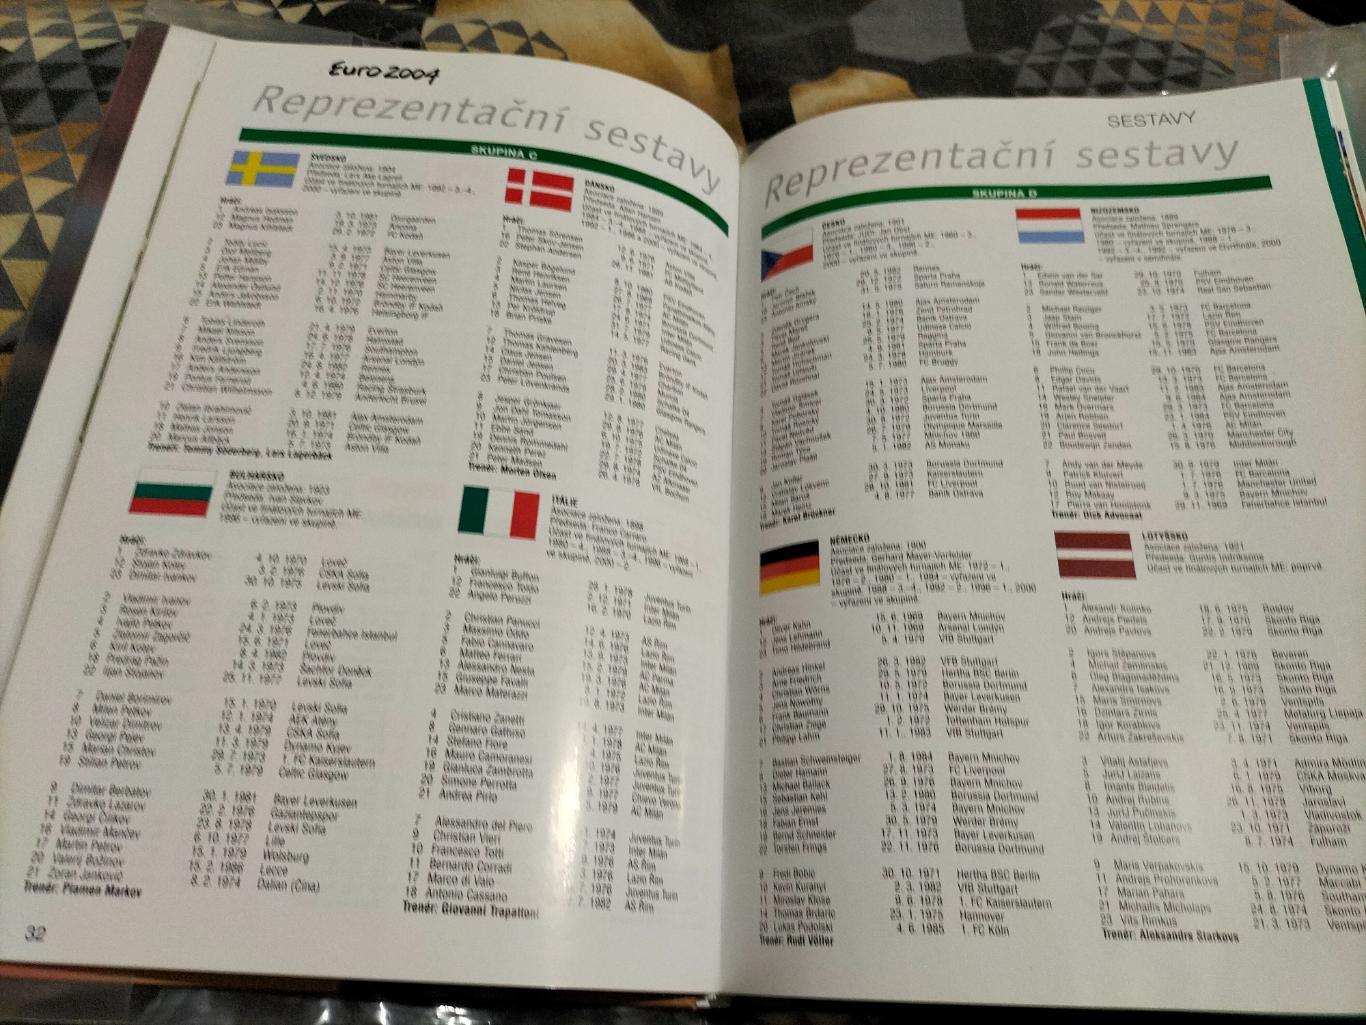 Итоговый фотоальбом чемпионат Европы-2004 года по футболу в Португалии. 4